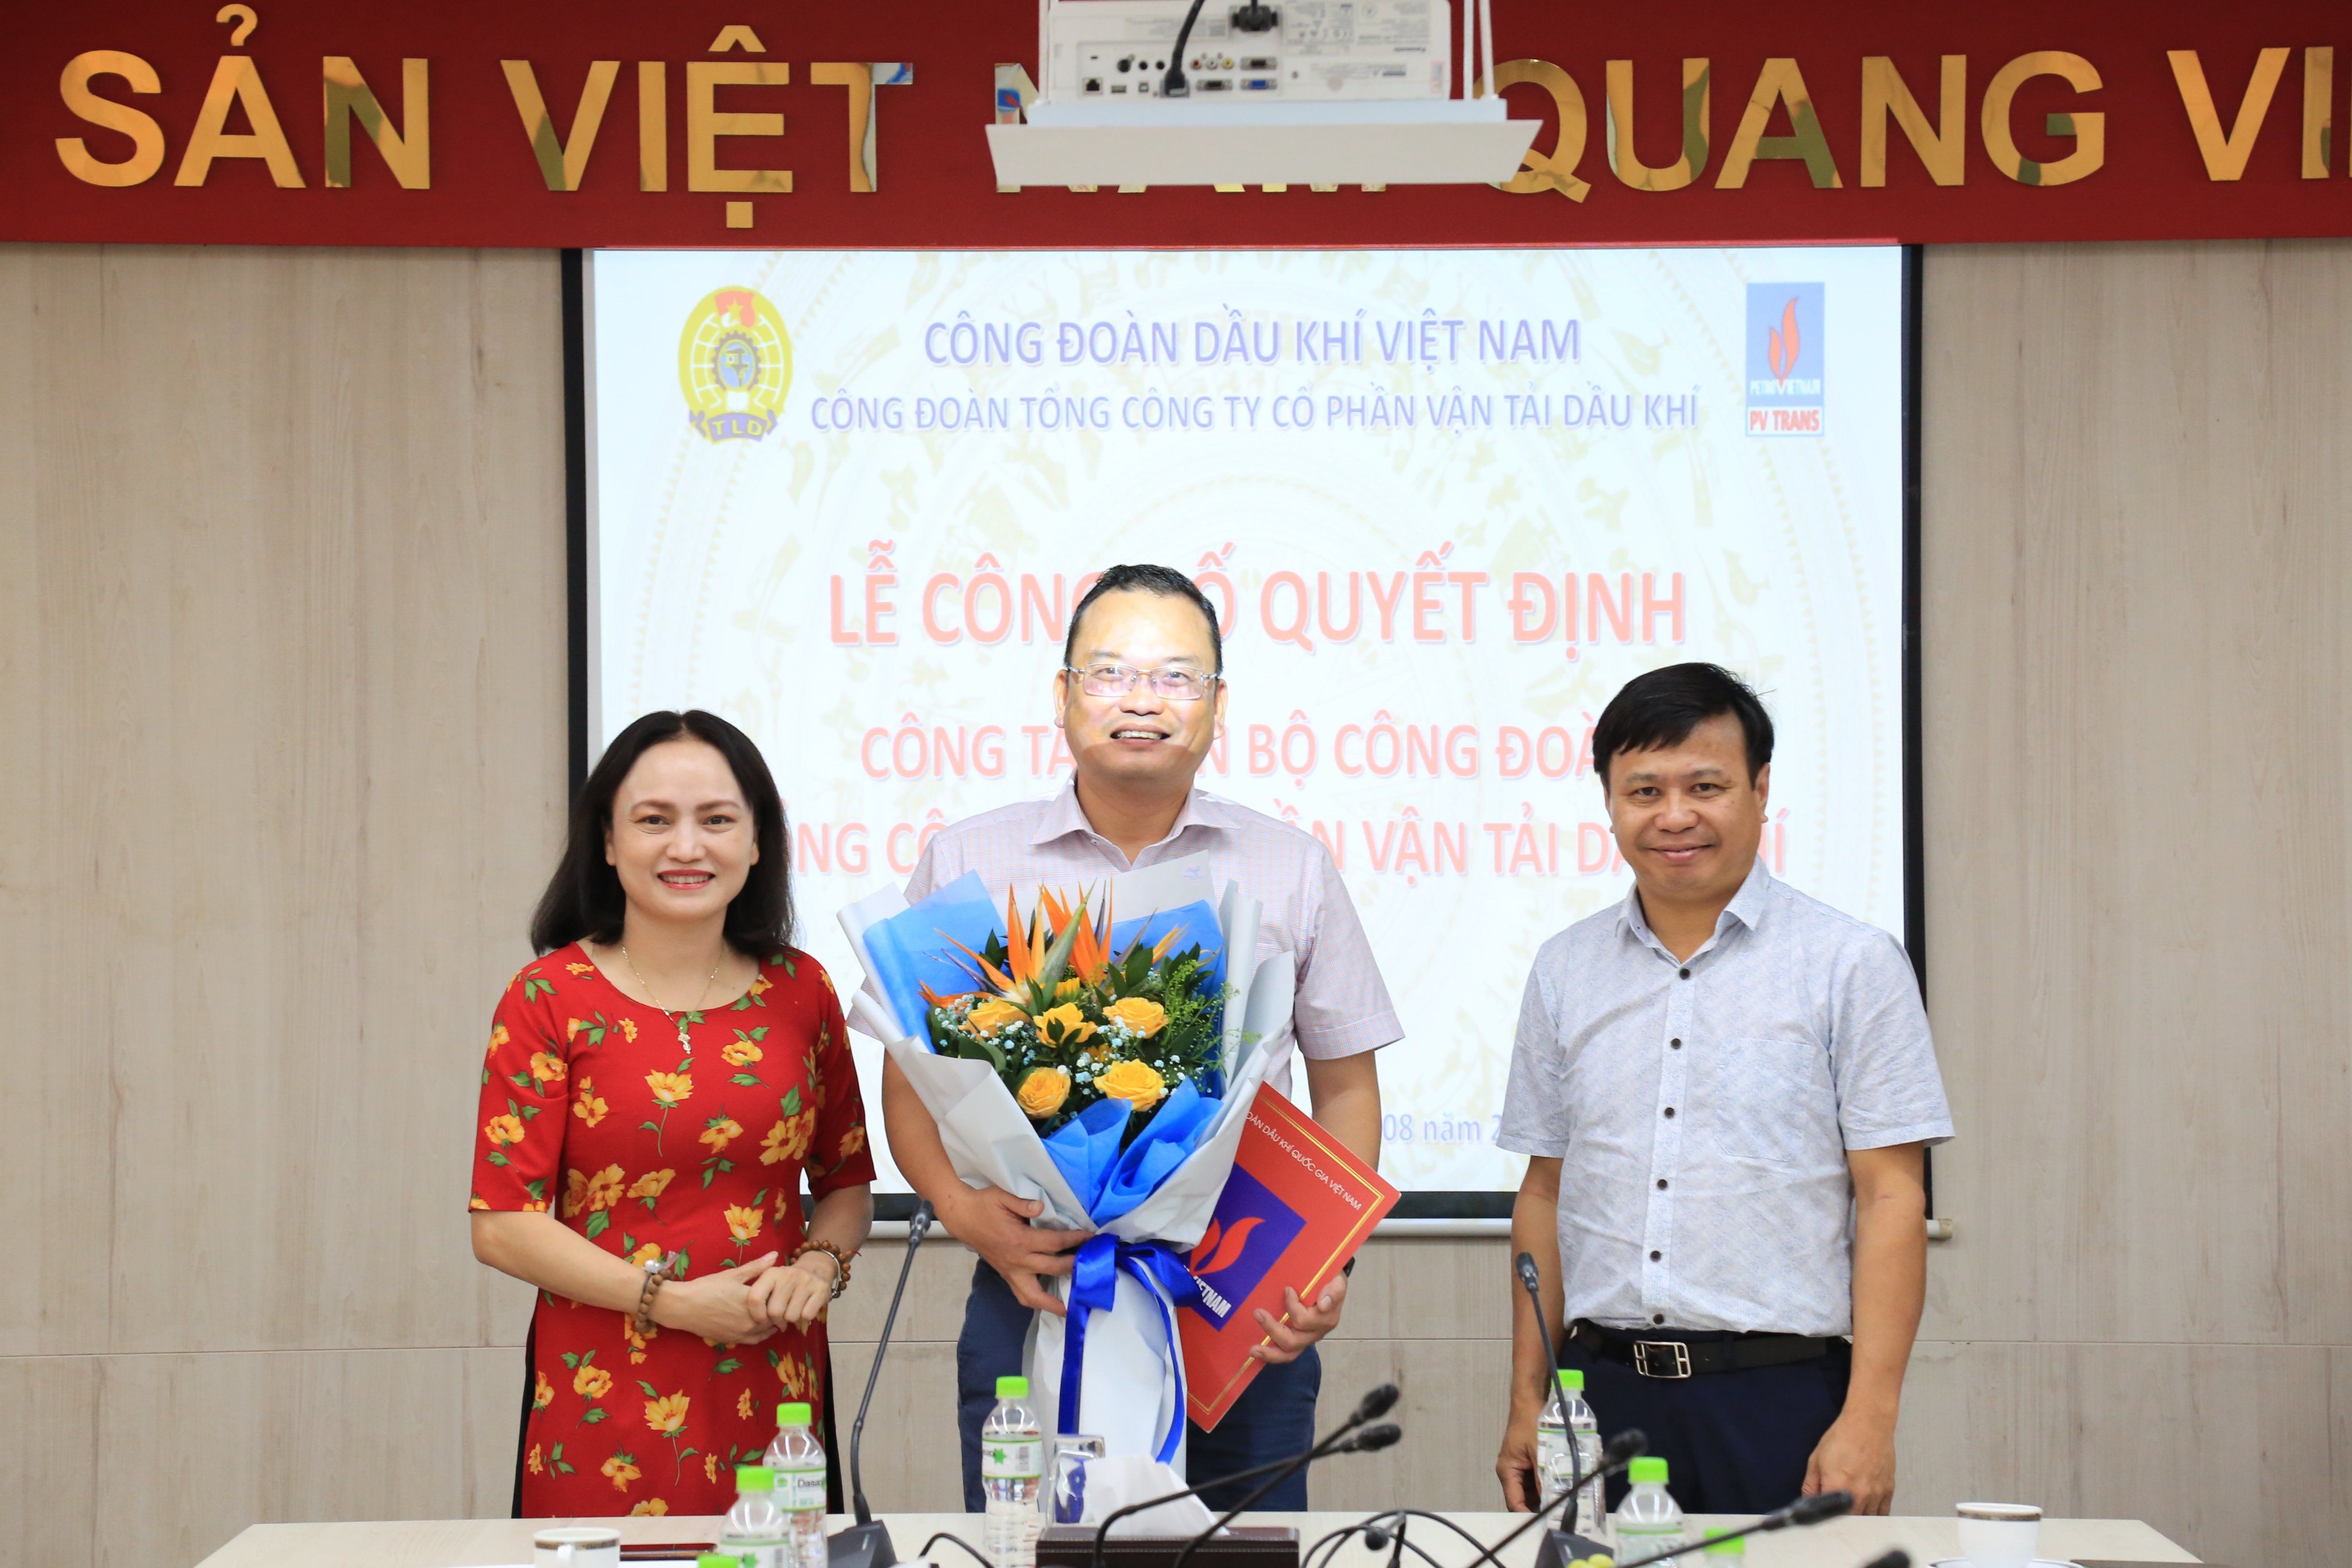 Công bố Quyết định và làm việc với Công đoàn Dầu khí Việt Nam